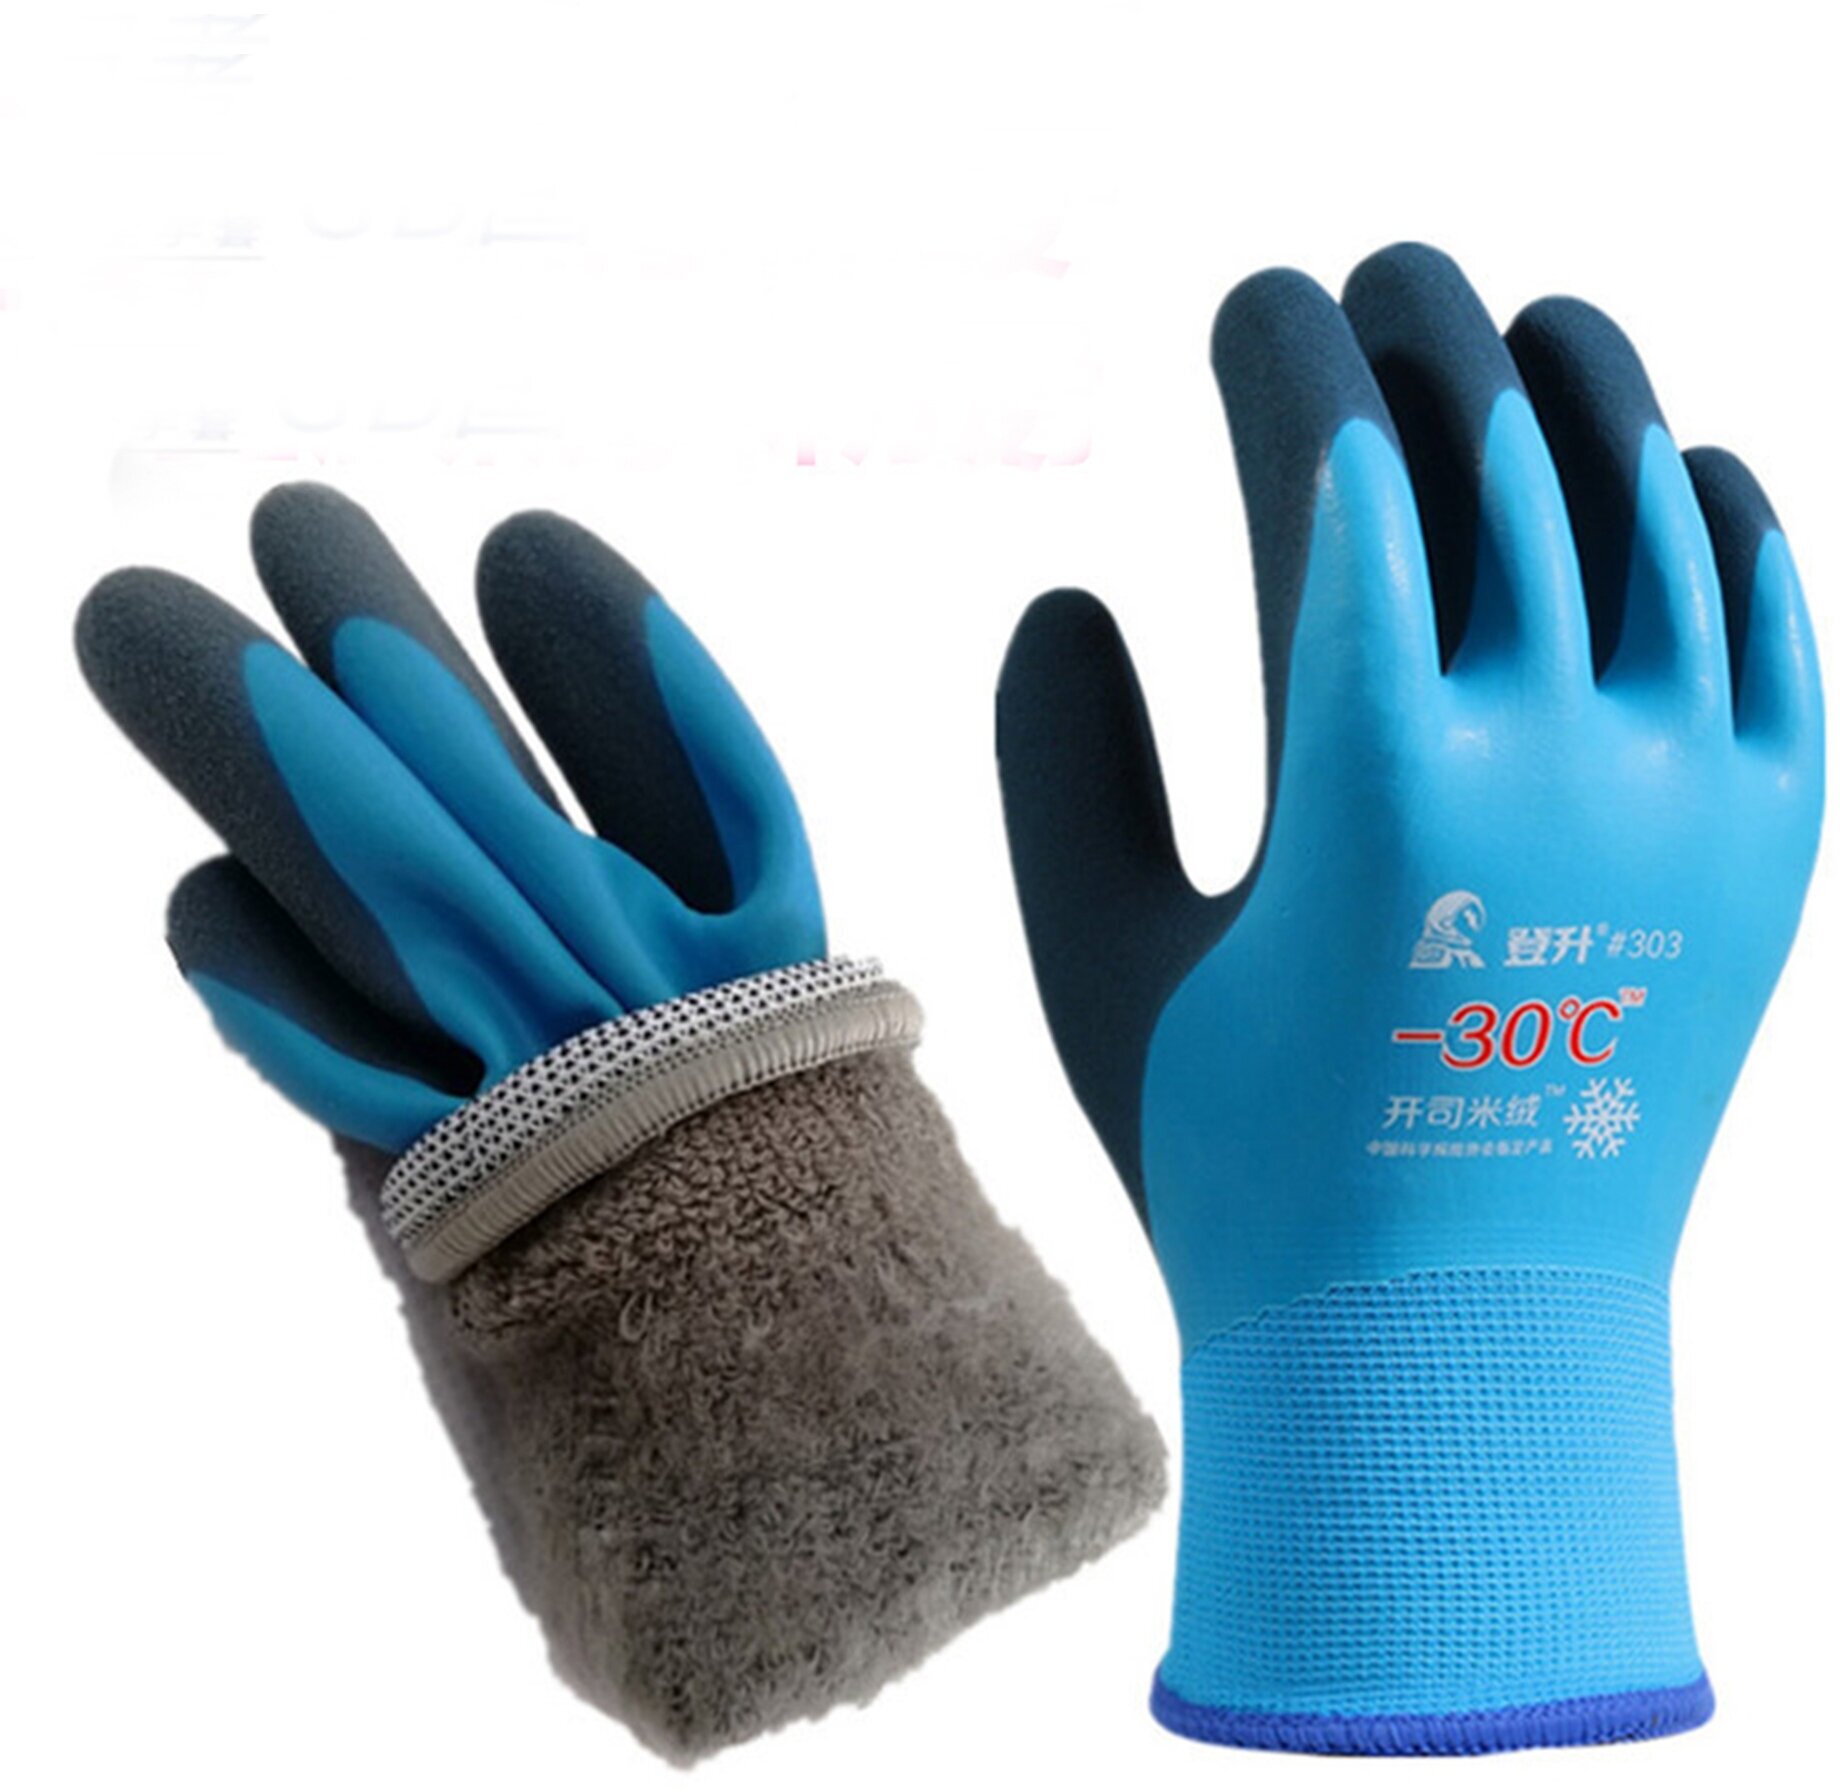 Зимние теплые прорезиненные водонепроницаемые туристические перчатки до -30 / для рыбалки / для охоты / для туризма (синие)